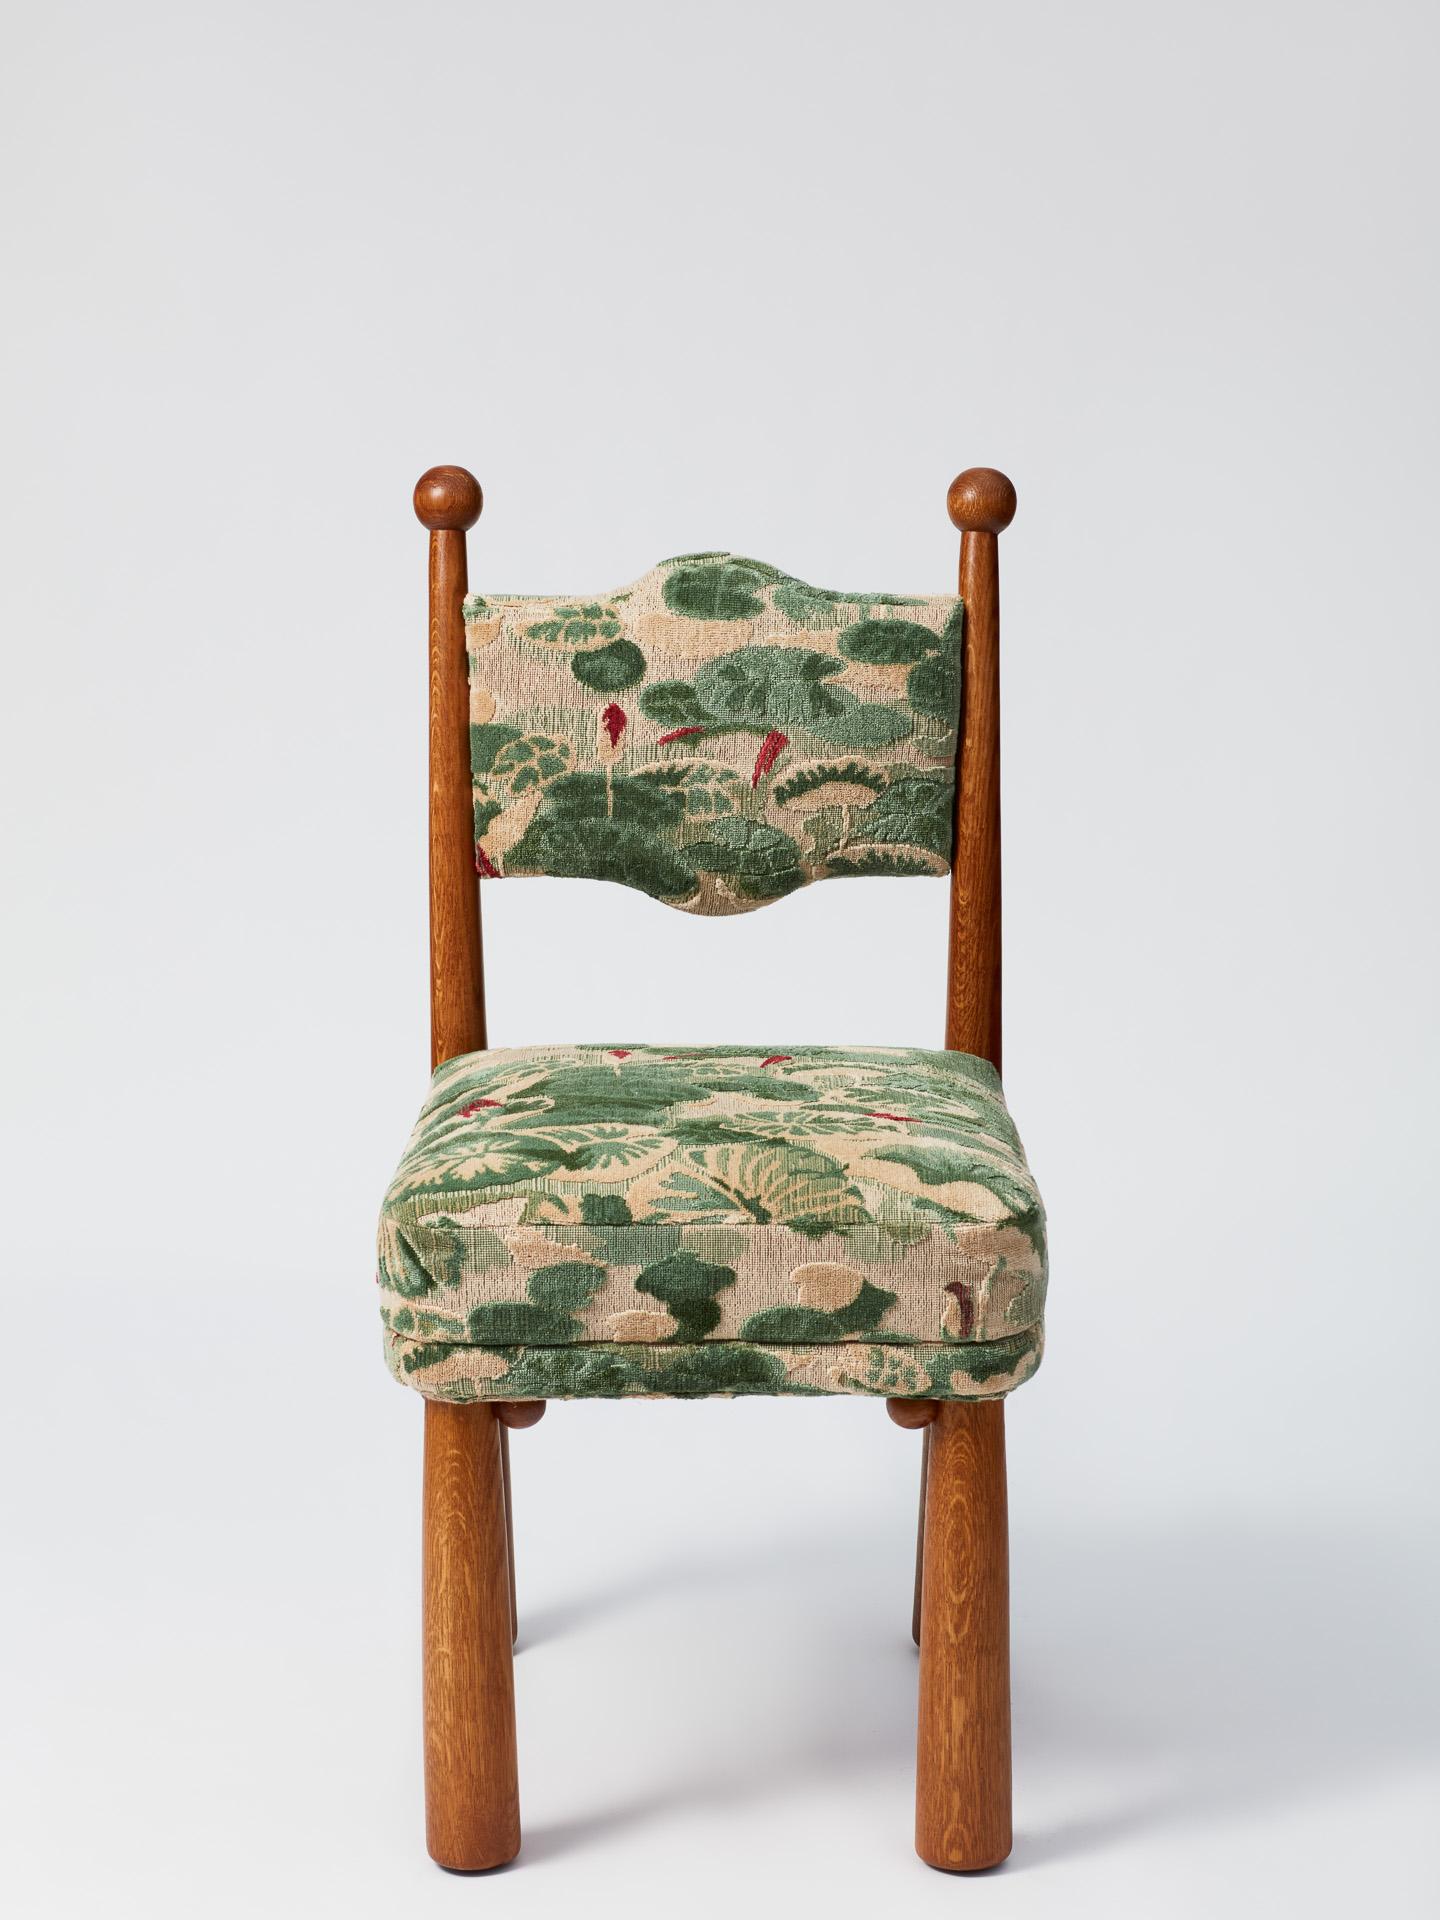 Chaise originale en chêne doré, finition satinée, pieds évasés.

* Délai de production de 12 à 14 semaines.
* Personnalisez le tissu et les dimensions de votre chaise.